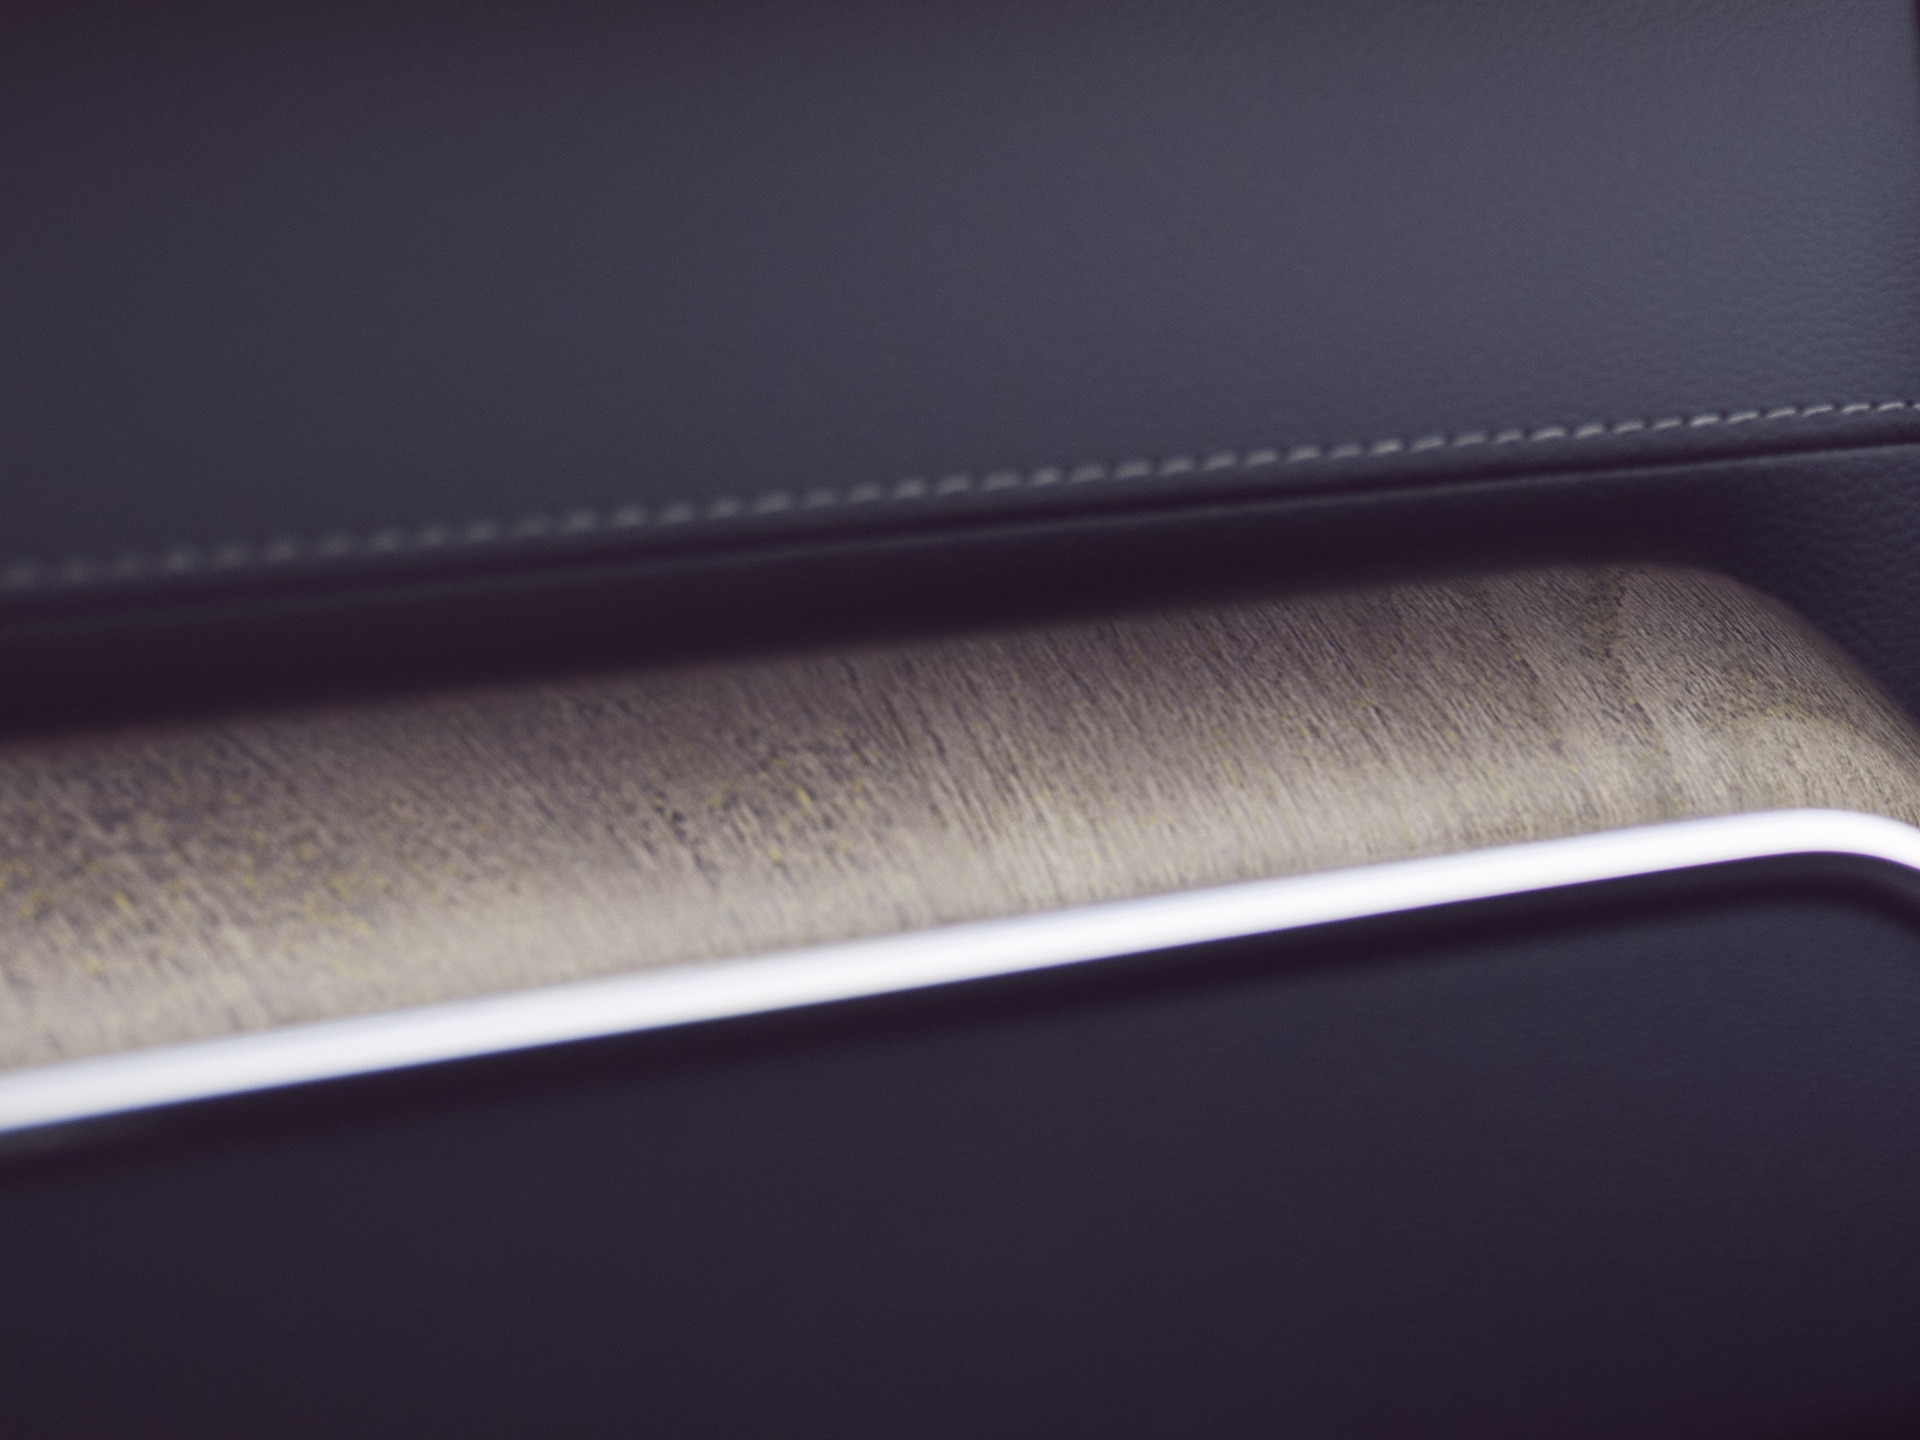 Điểm nhấn trang trí bằng gỗ lũa trong xe Volvo XC60 làm tăng thêm nét tự nhiên.